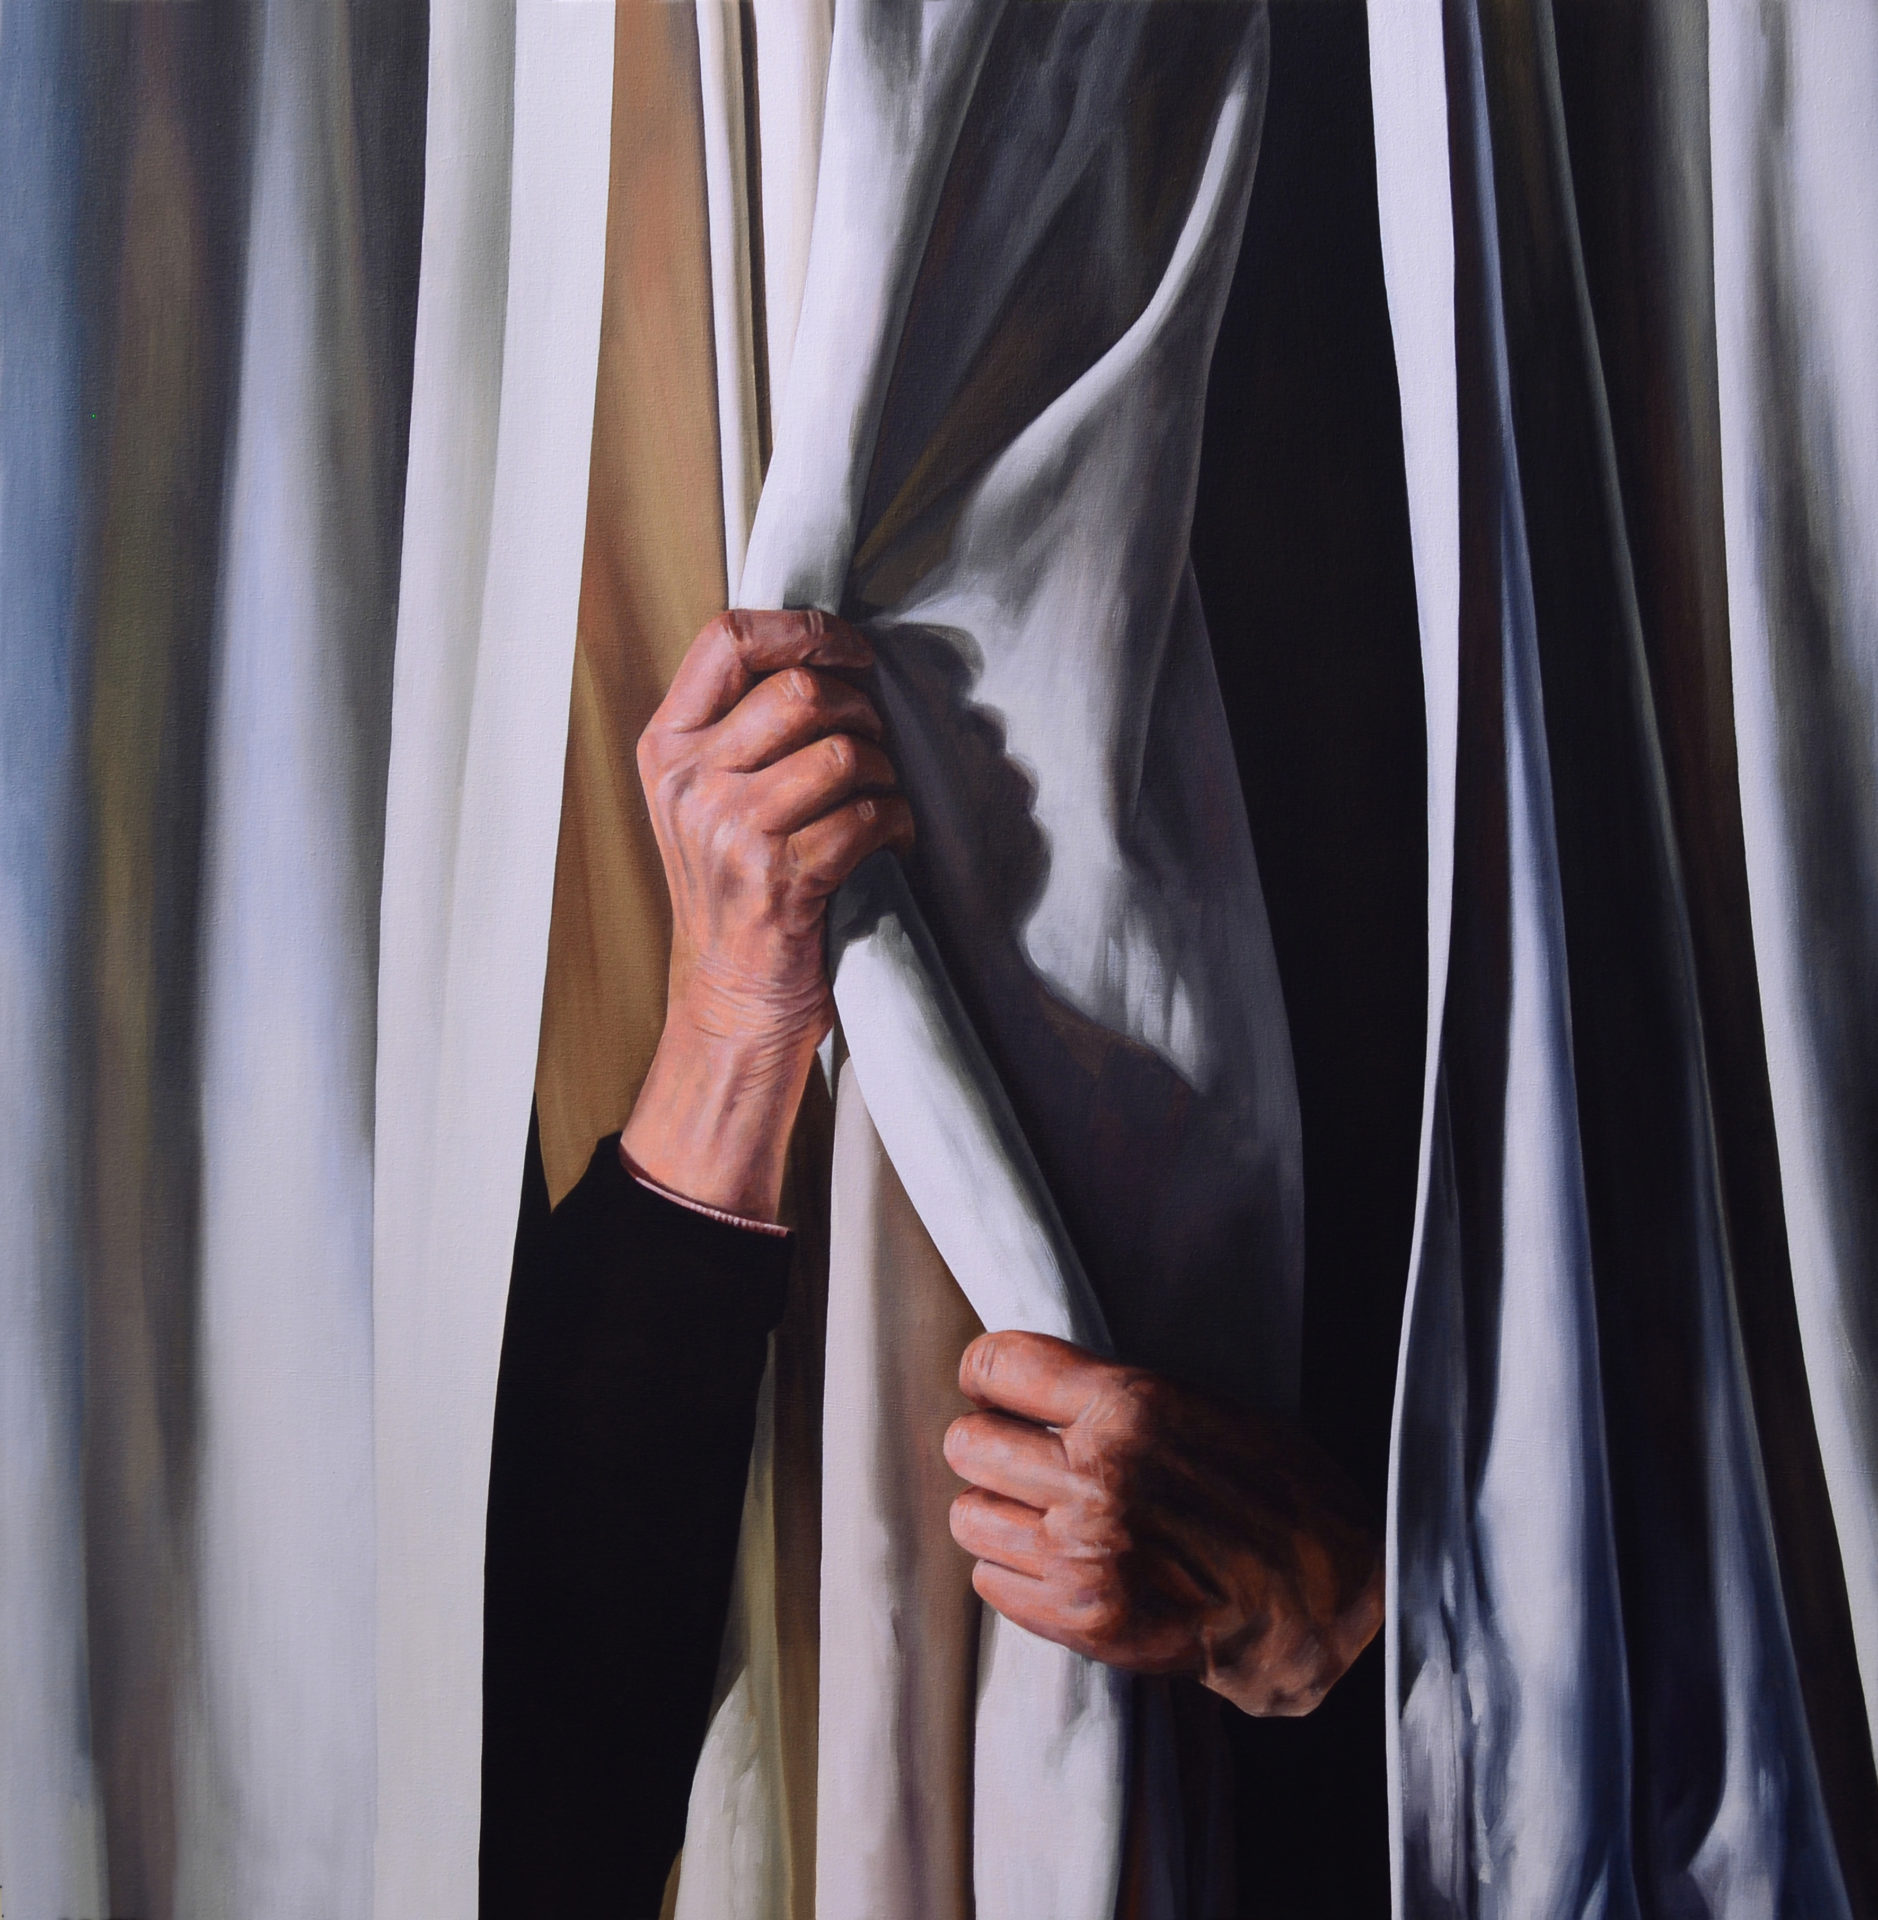 Le rideau, huile sur toile, 100 x 100 cm, 2017